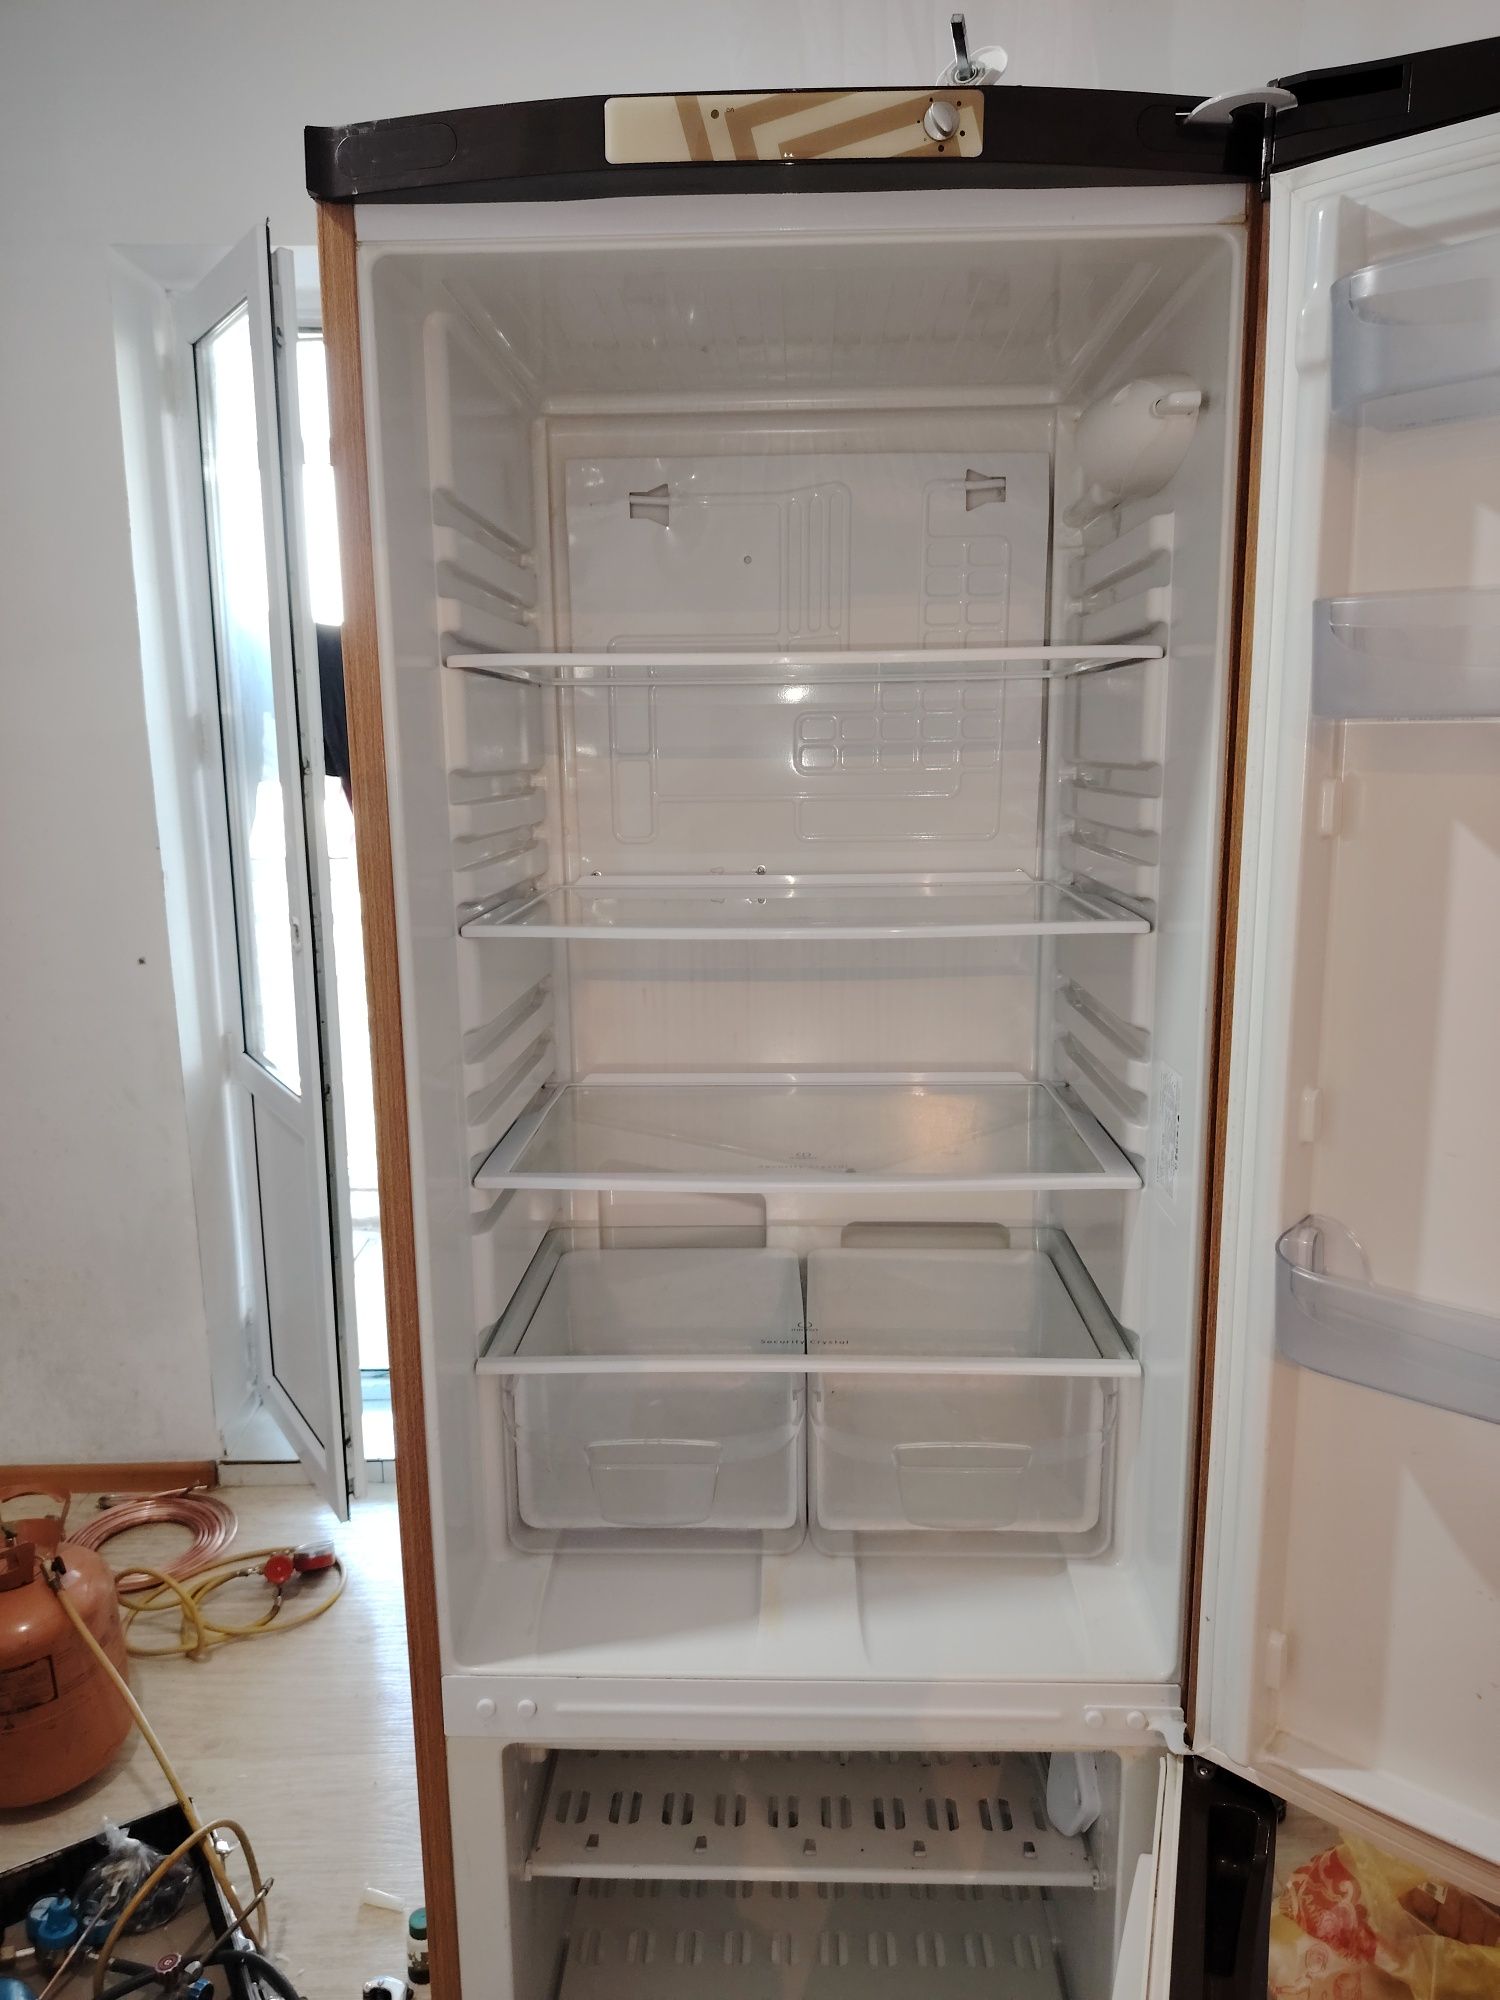 Ремонт  холодильников